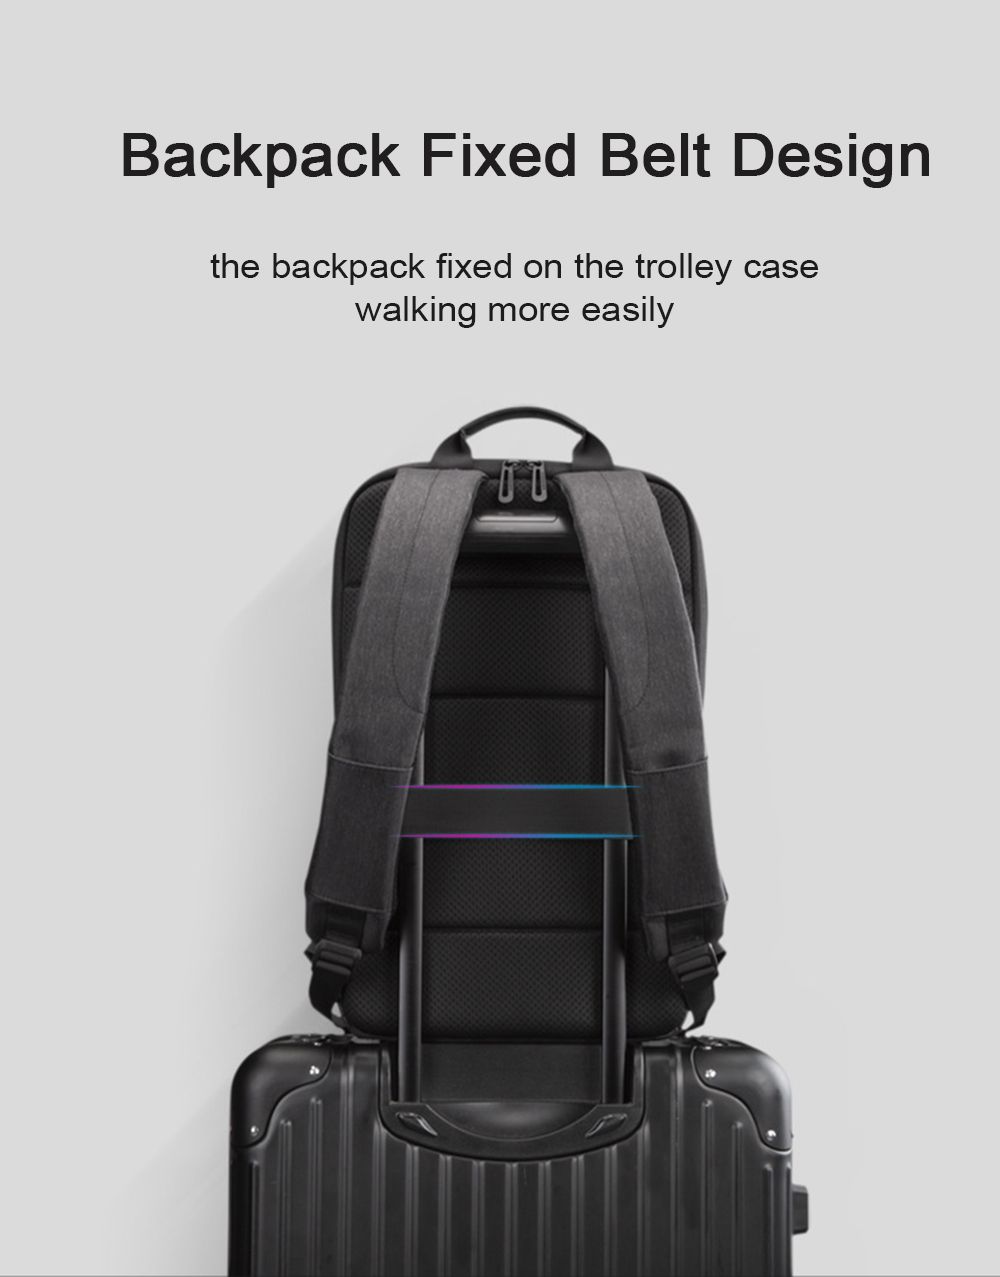 Kingsons-ks3215-Business-Backpack-Laptop-Bag-Male-Shoulders-Storage-Bag-with-USB-11L-Multi-functiona-1738552